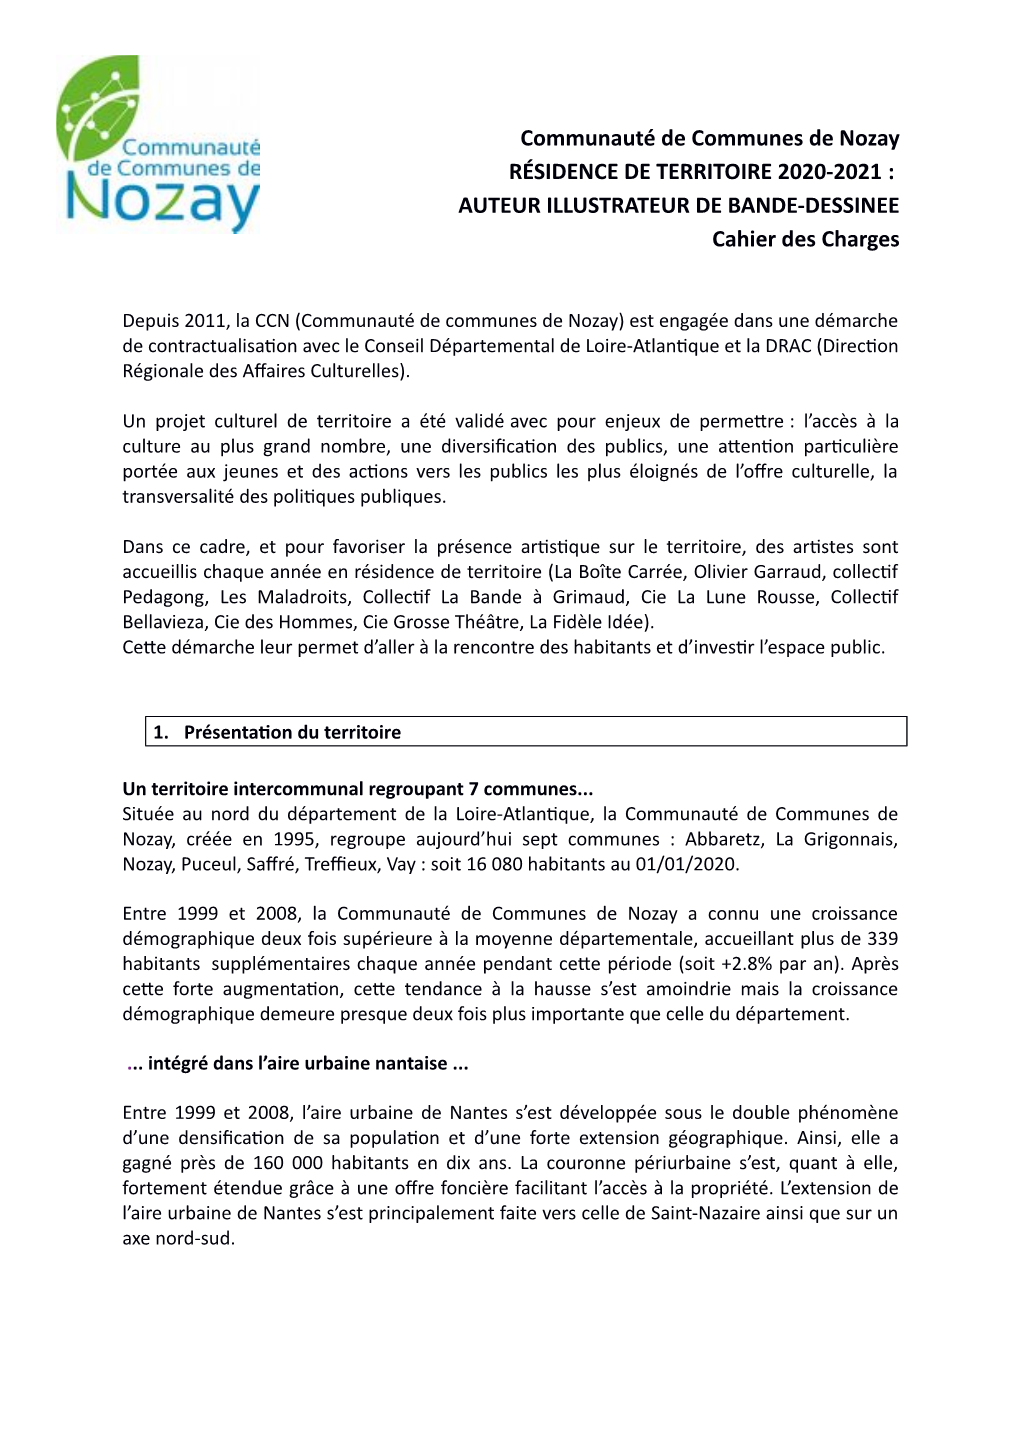 Communauté De Communes De Nozay RÉSIDENCE DE TERRITOIRE 2020-2021 : AUTEUR ILLUSTRATEUR DE BANDE-DESSINEE Cahier Des Charges